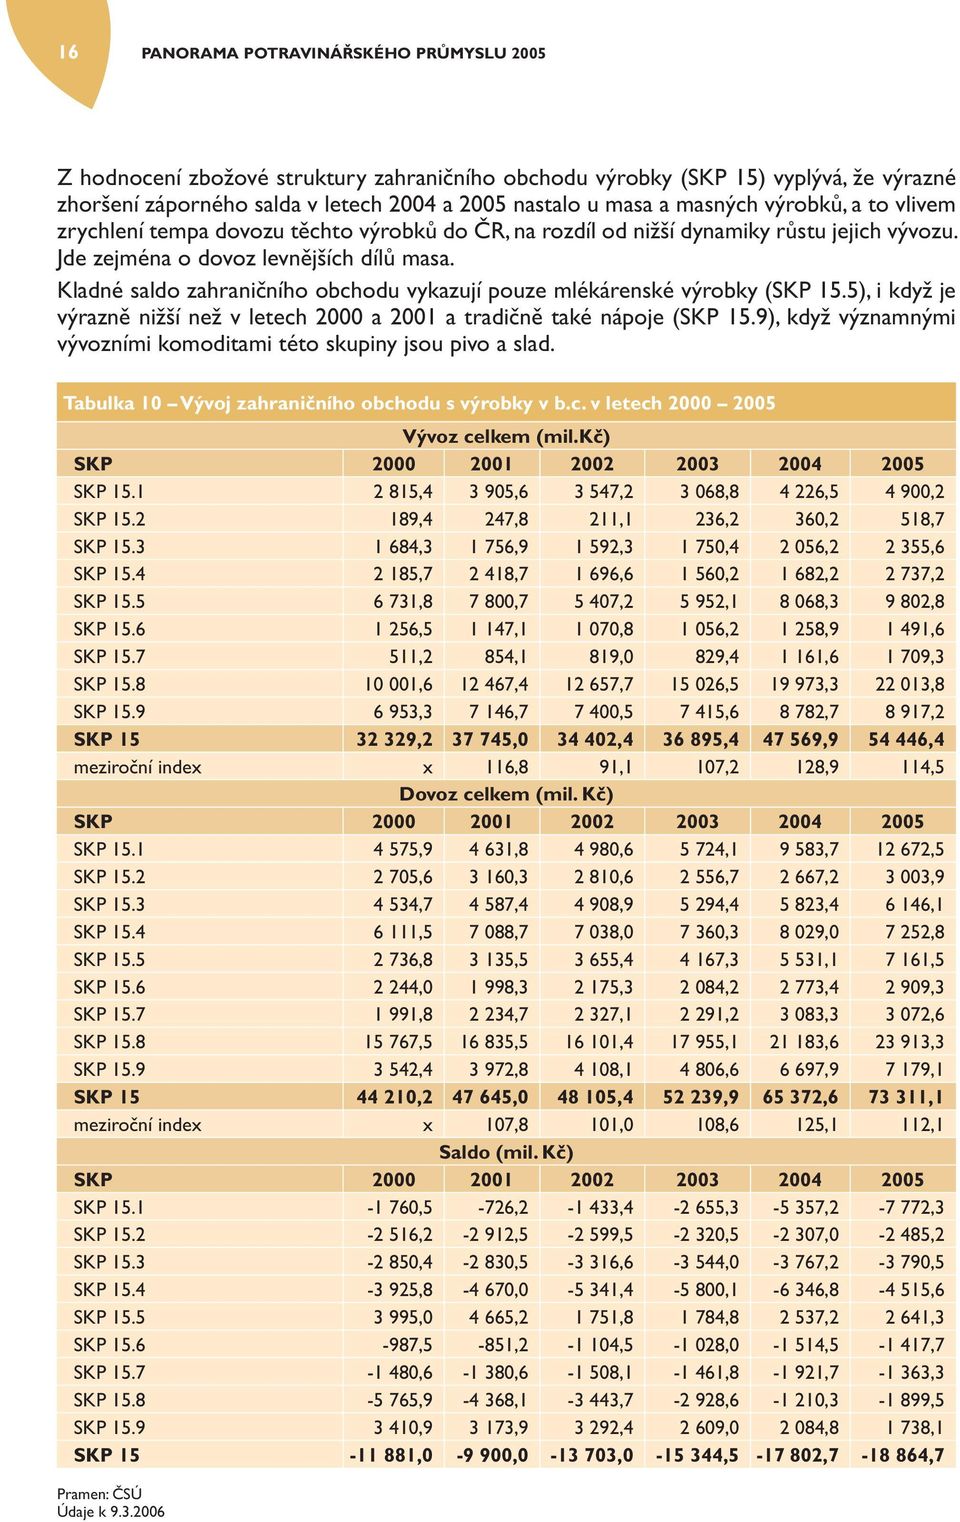 Kladné saldo zahraničního obchodu vykazují pouze mlékárenské výrobky (SKP 15.5), i když je výrazně nižší než v letech 2000 a 2001 a tradičně také nápoje (SKP 15.